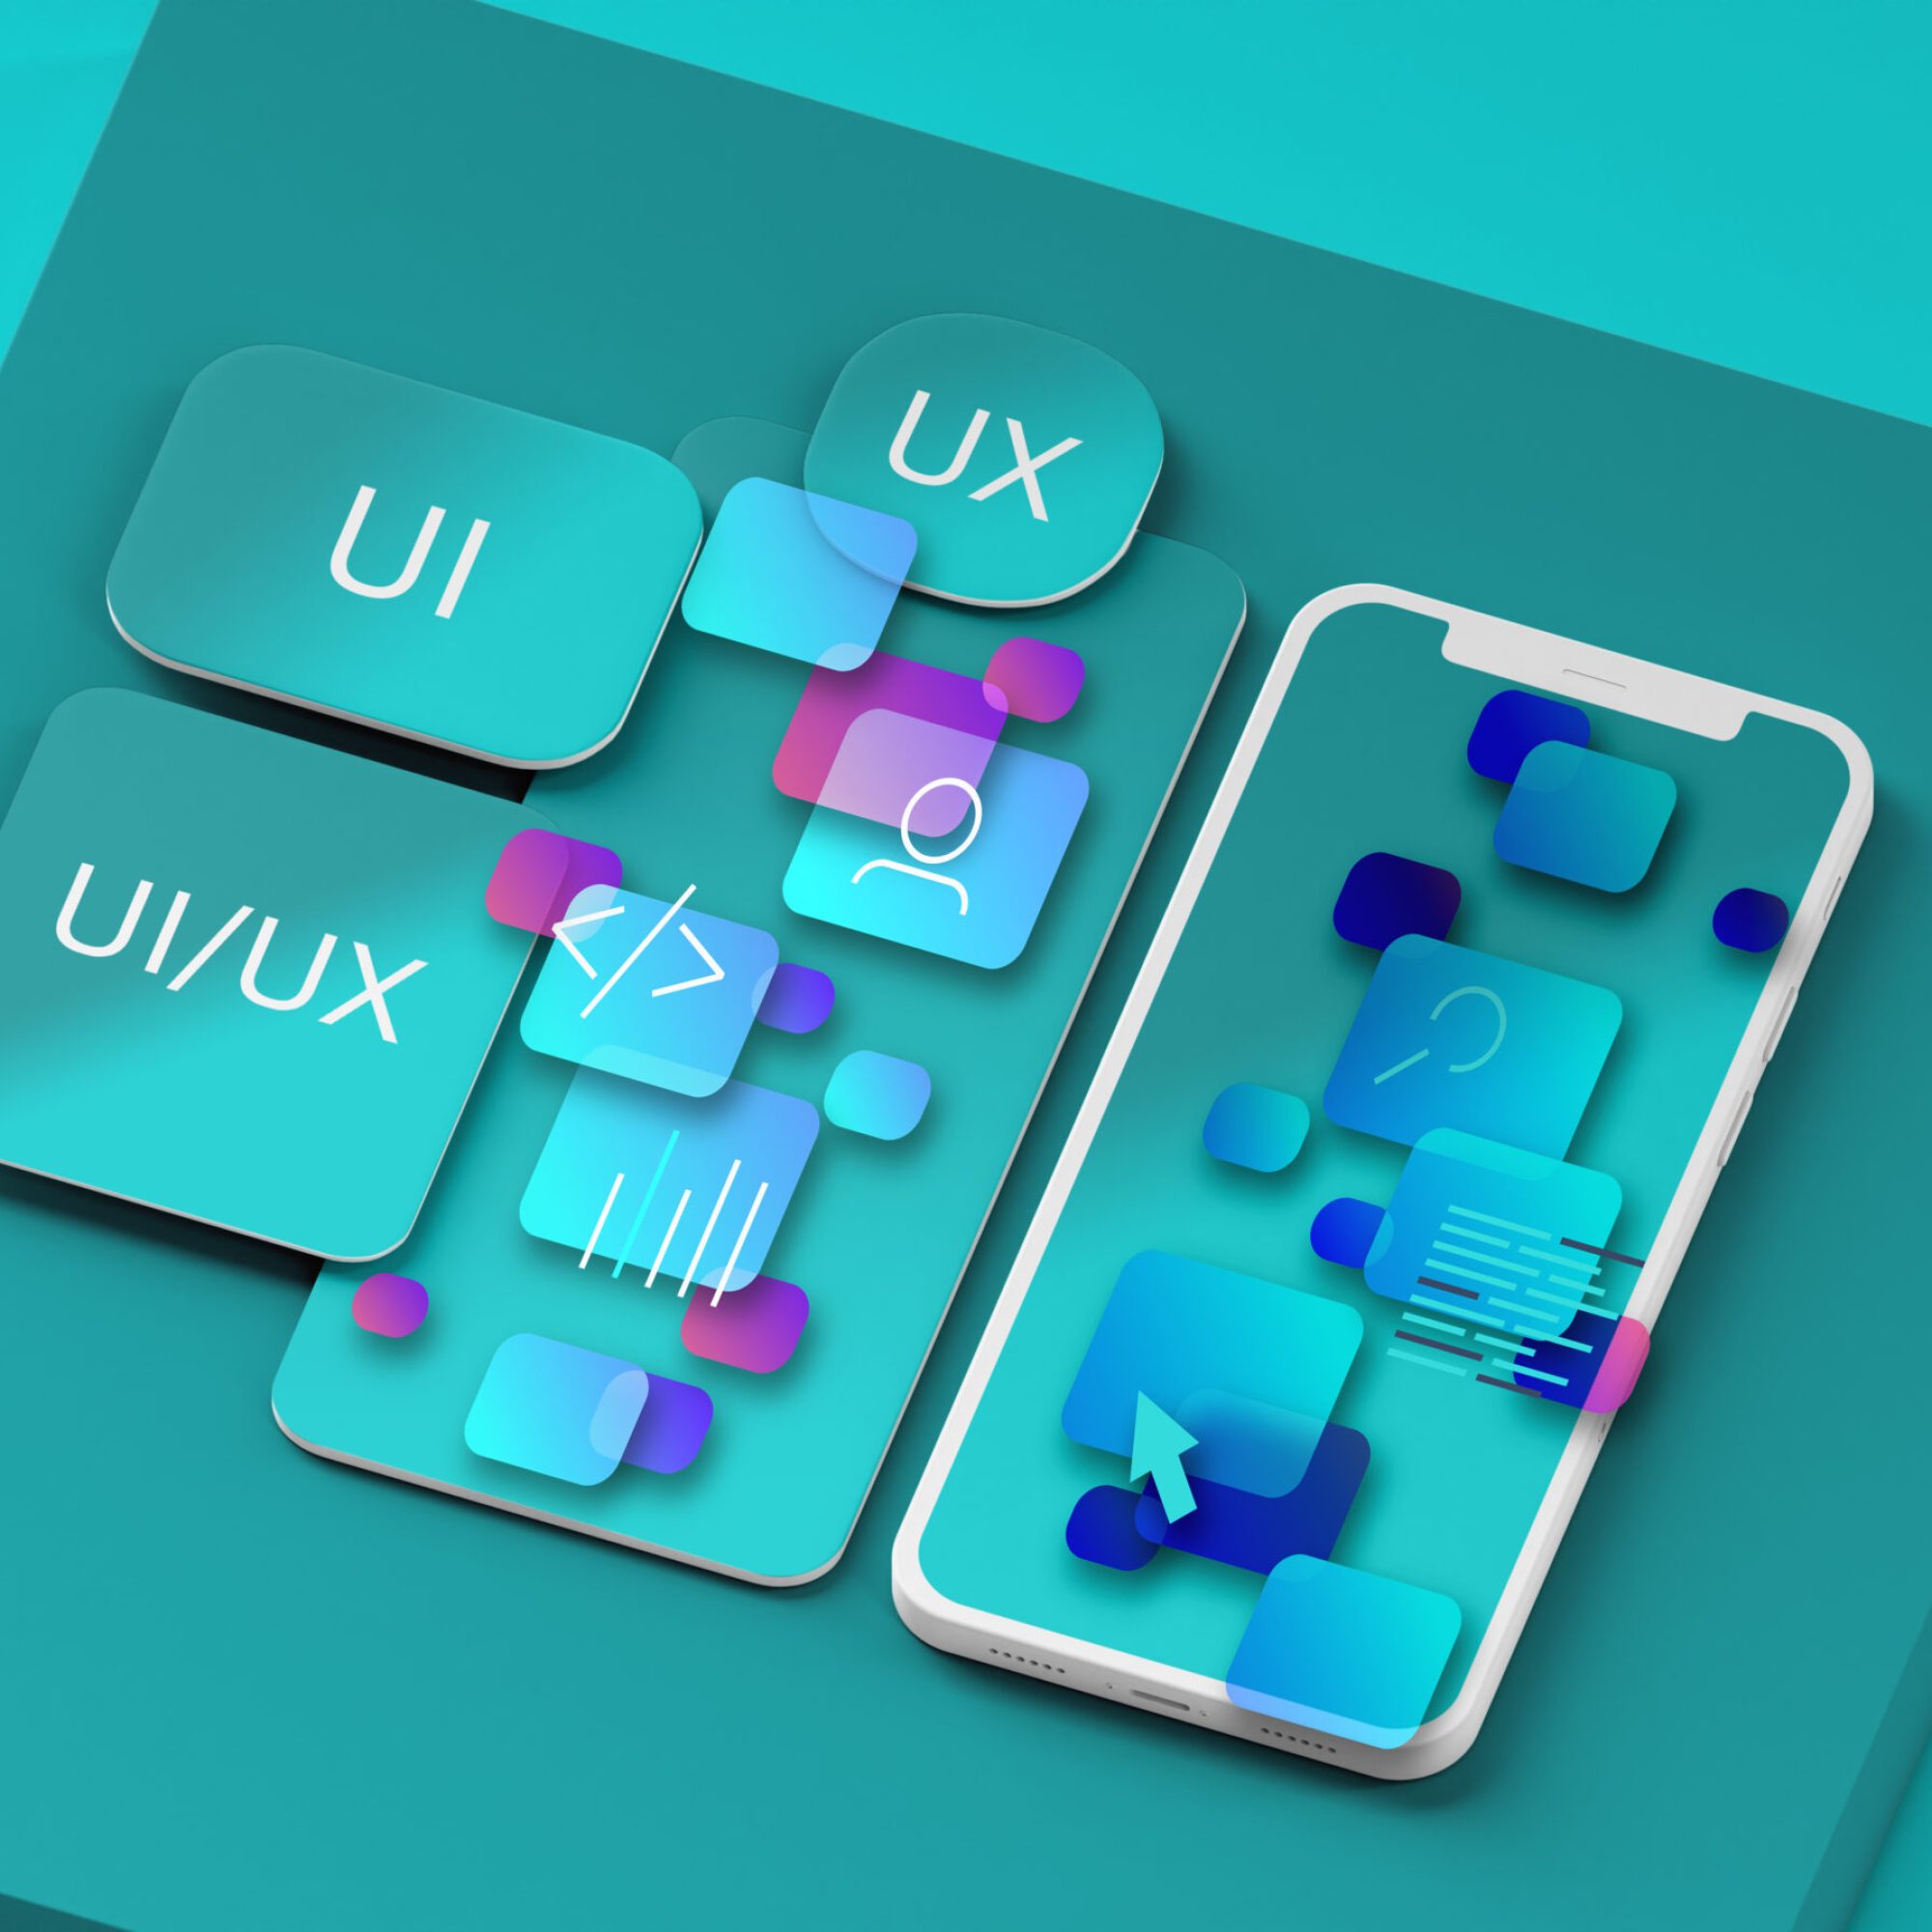 Intuitive UI/UX Designs